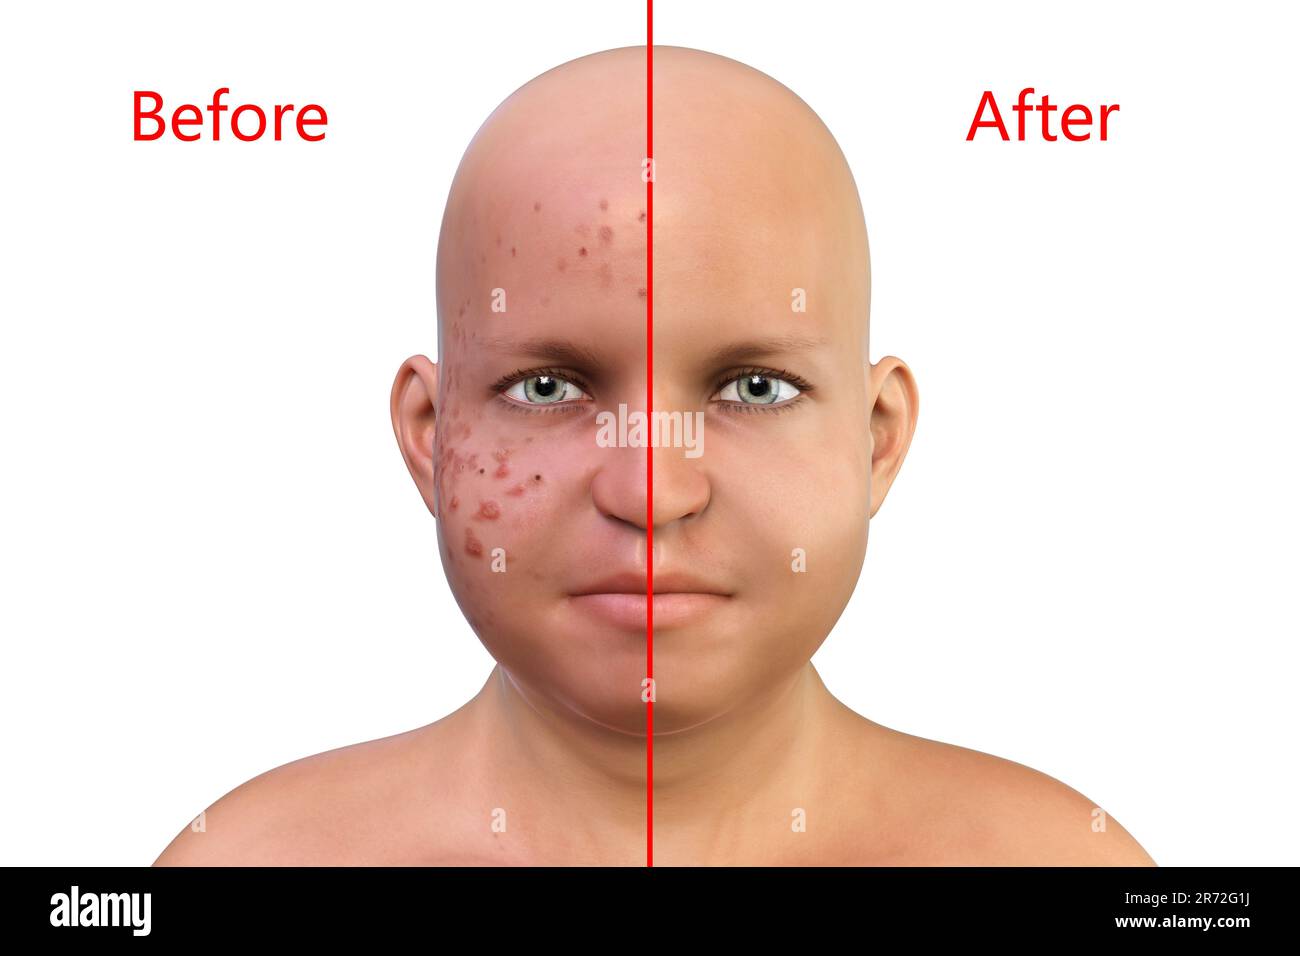 Akne vulgaris im Gesicht eines übergewichtigen Jungen, Computerdarstellung der Haut des Jungen vor und nach der Behandlung. Akne ist ein allgemeiner Name giv Stockfoto